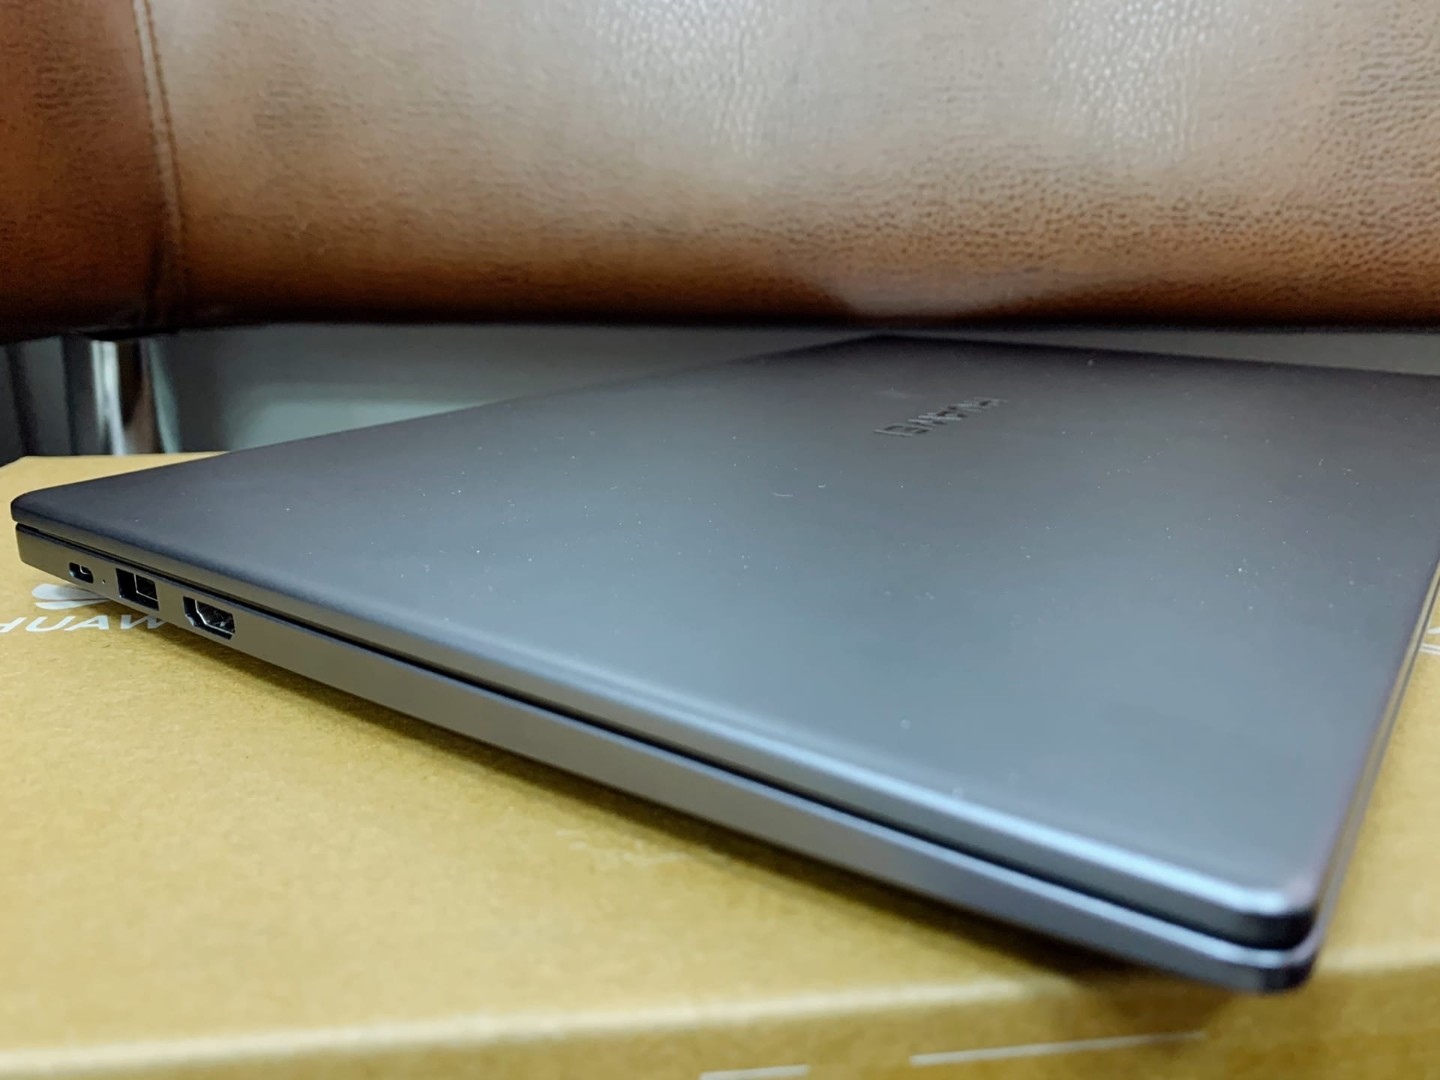 Ноутбук Huawei Matebook D 15.6 Купить